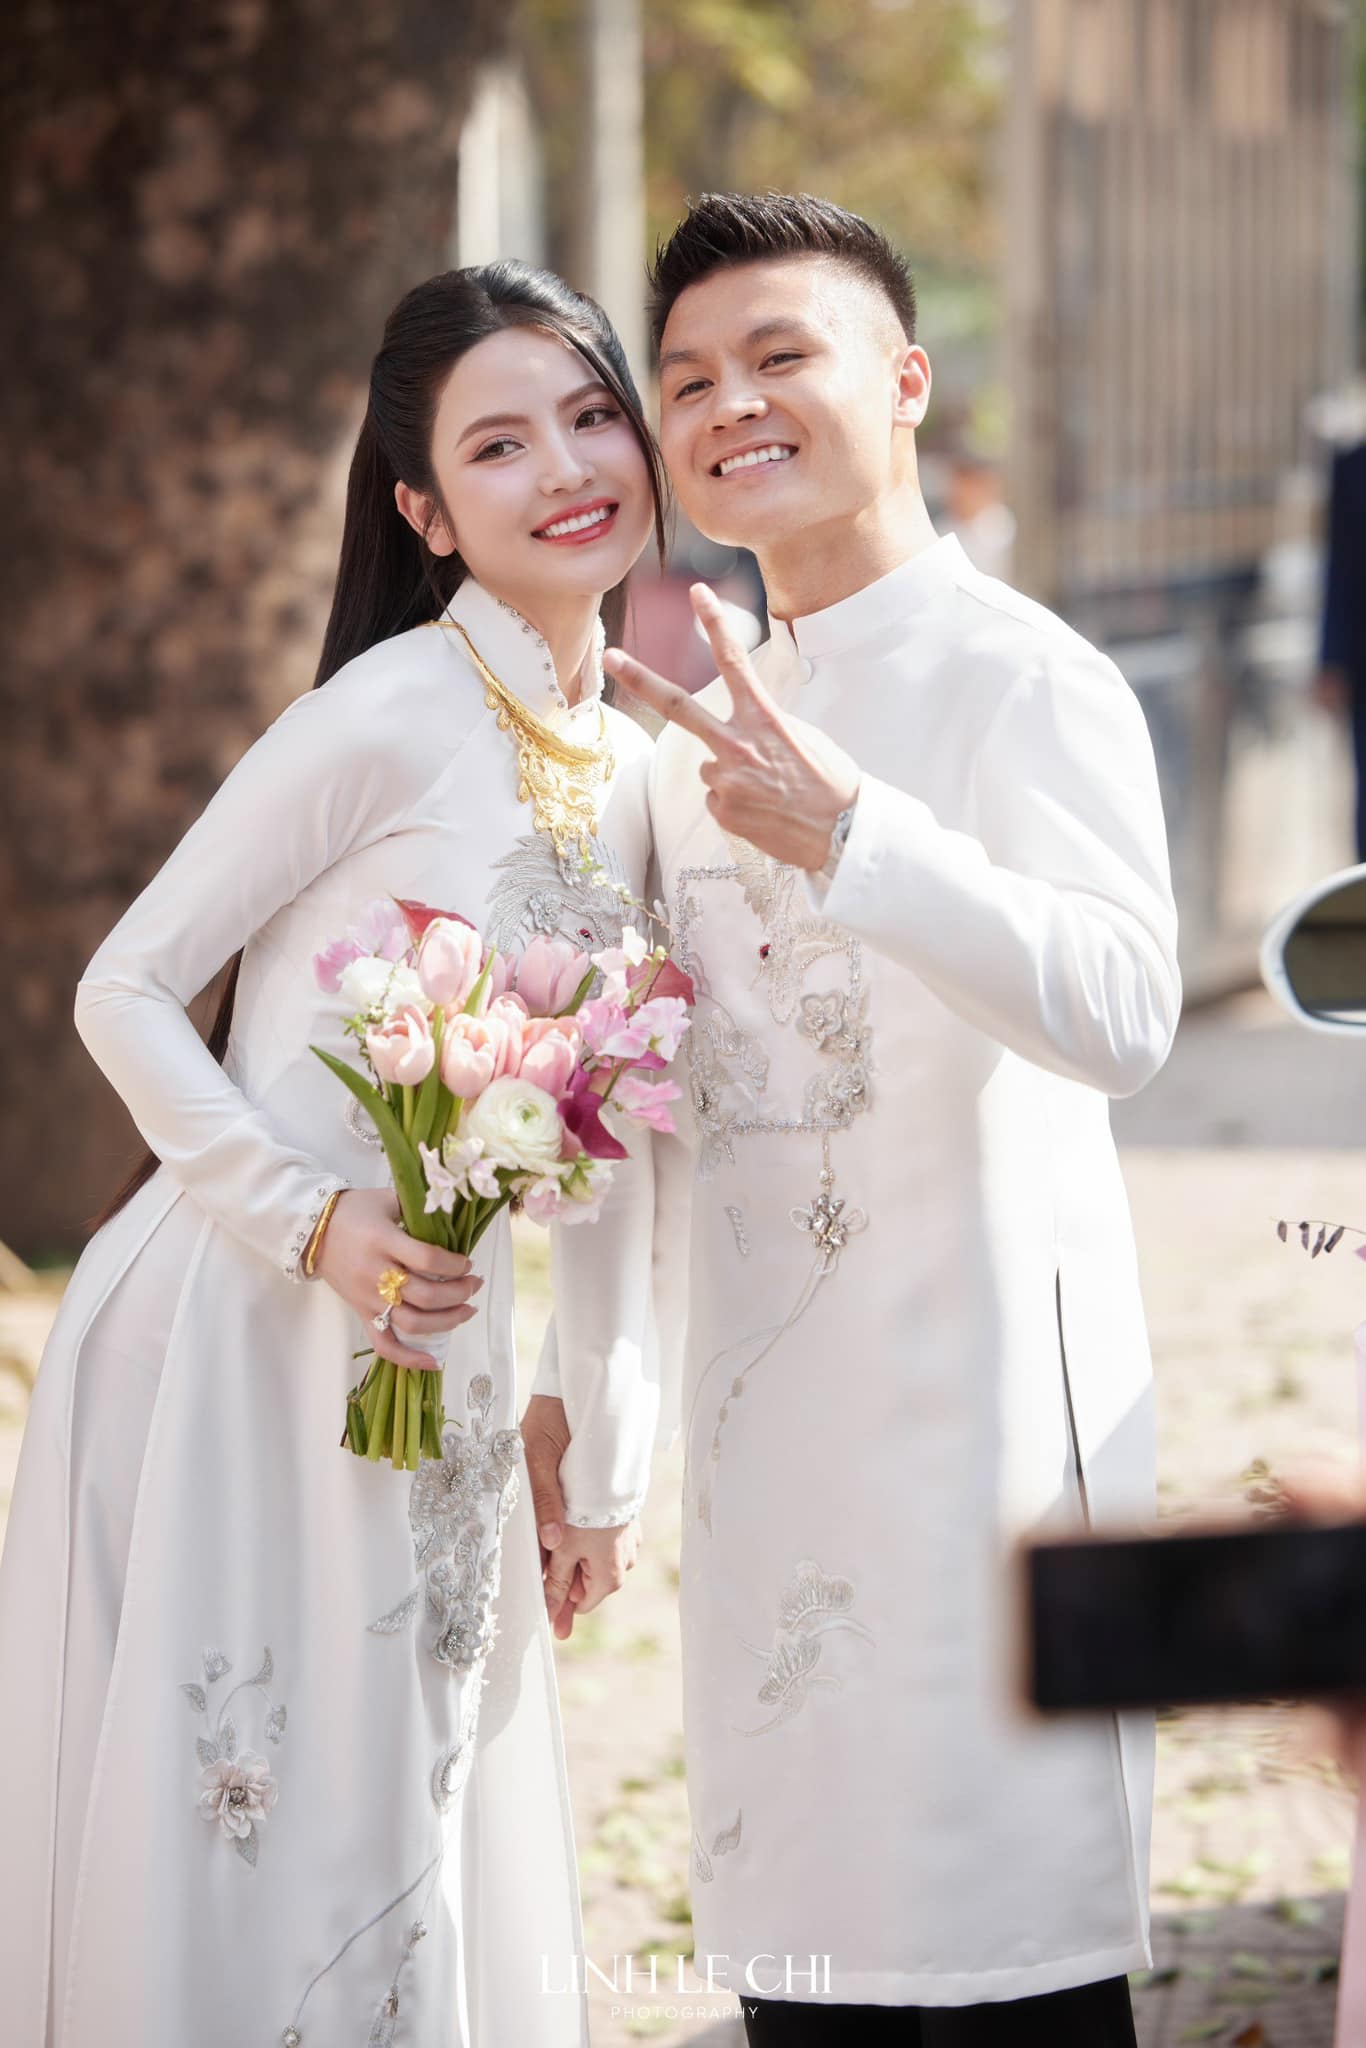 Quang Hải khoe đi đăng ký kết hôn với Chu Thanh Huyền, dàn cầu thủ vào “cảnh báo” chuyện lấy vợ cực hài hước - ảnh 4